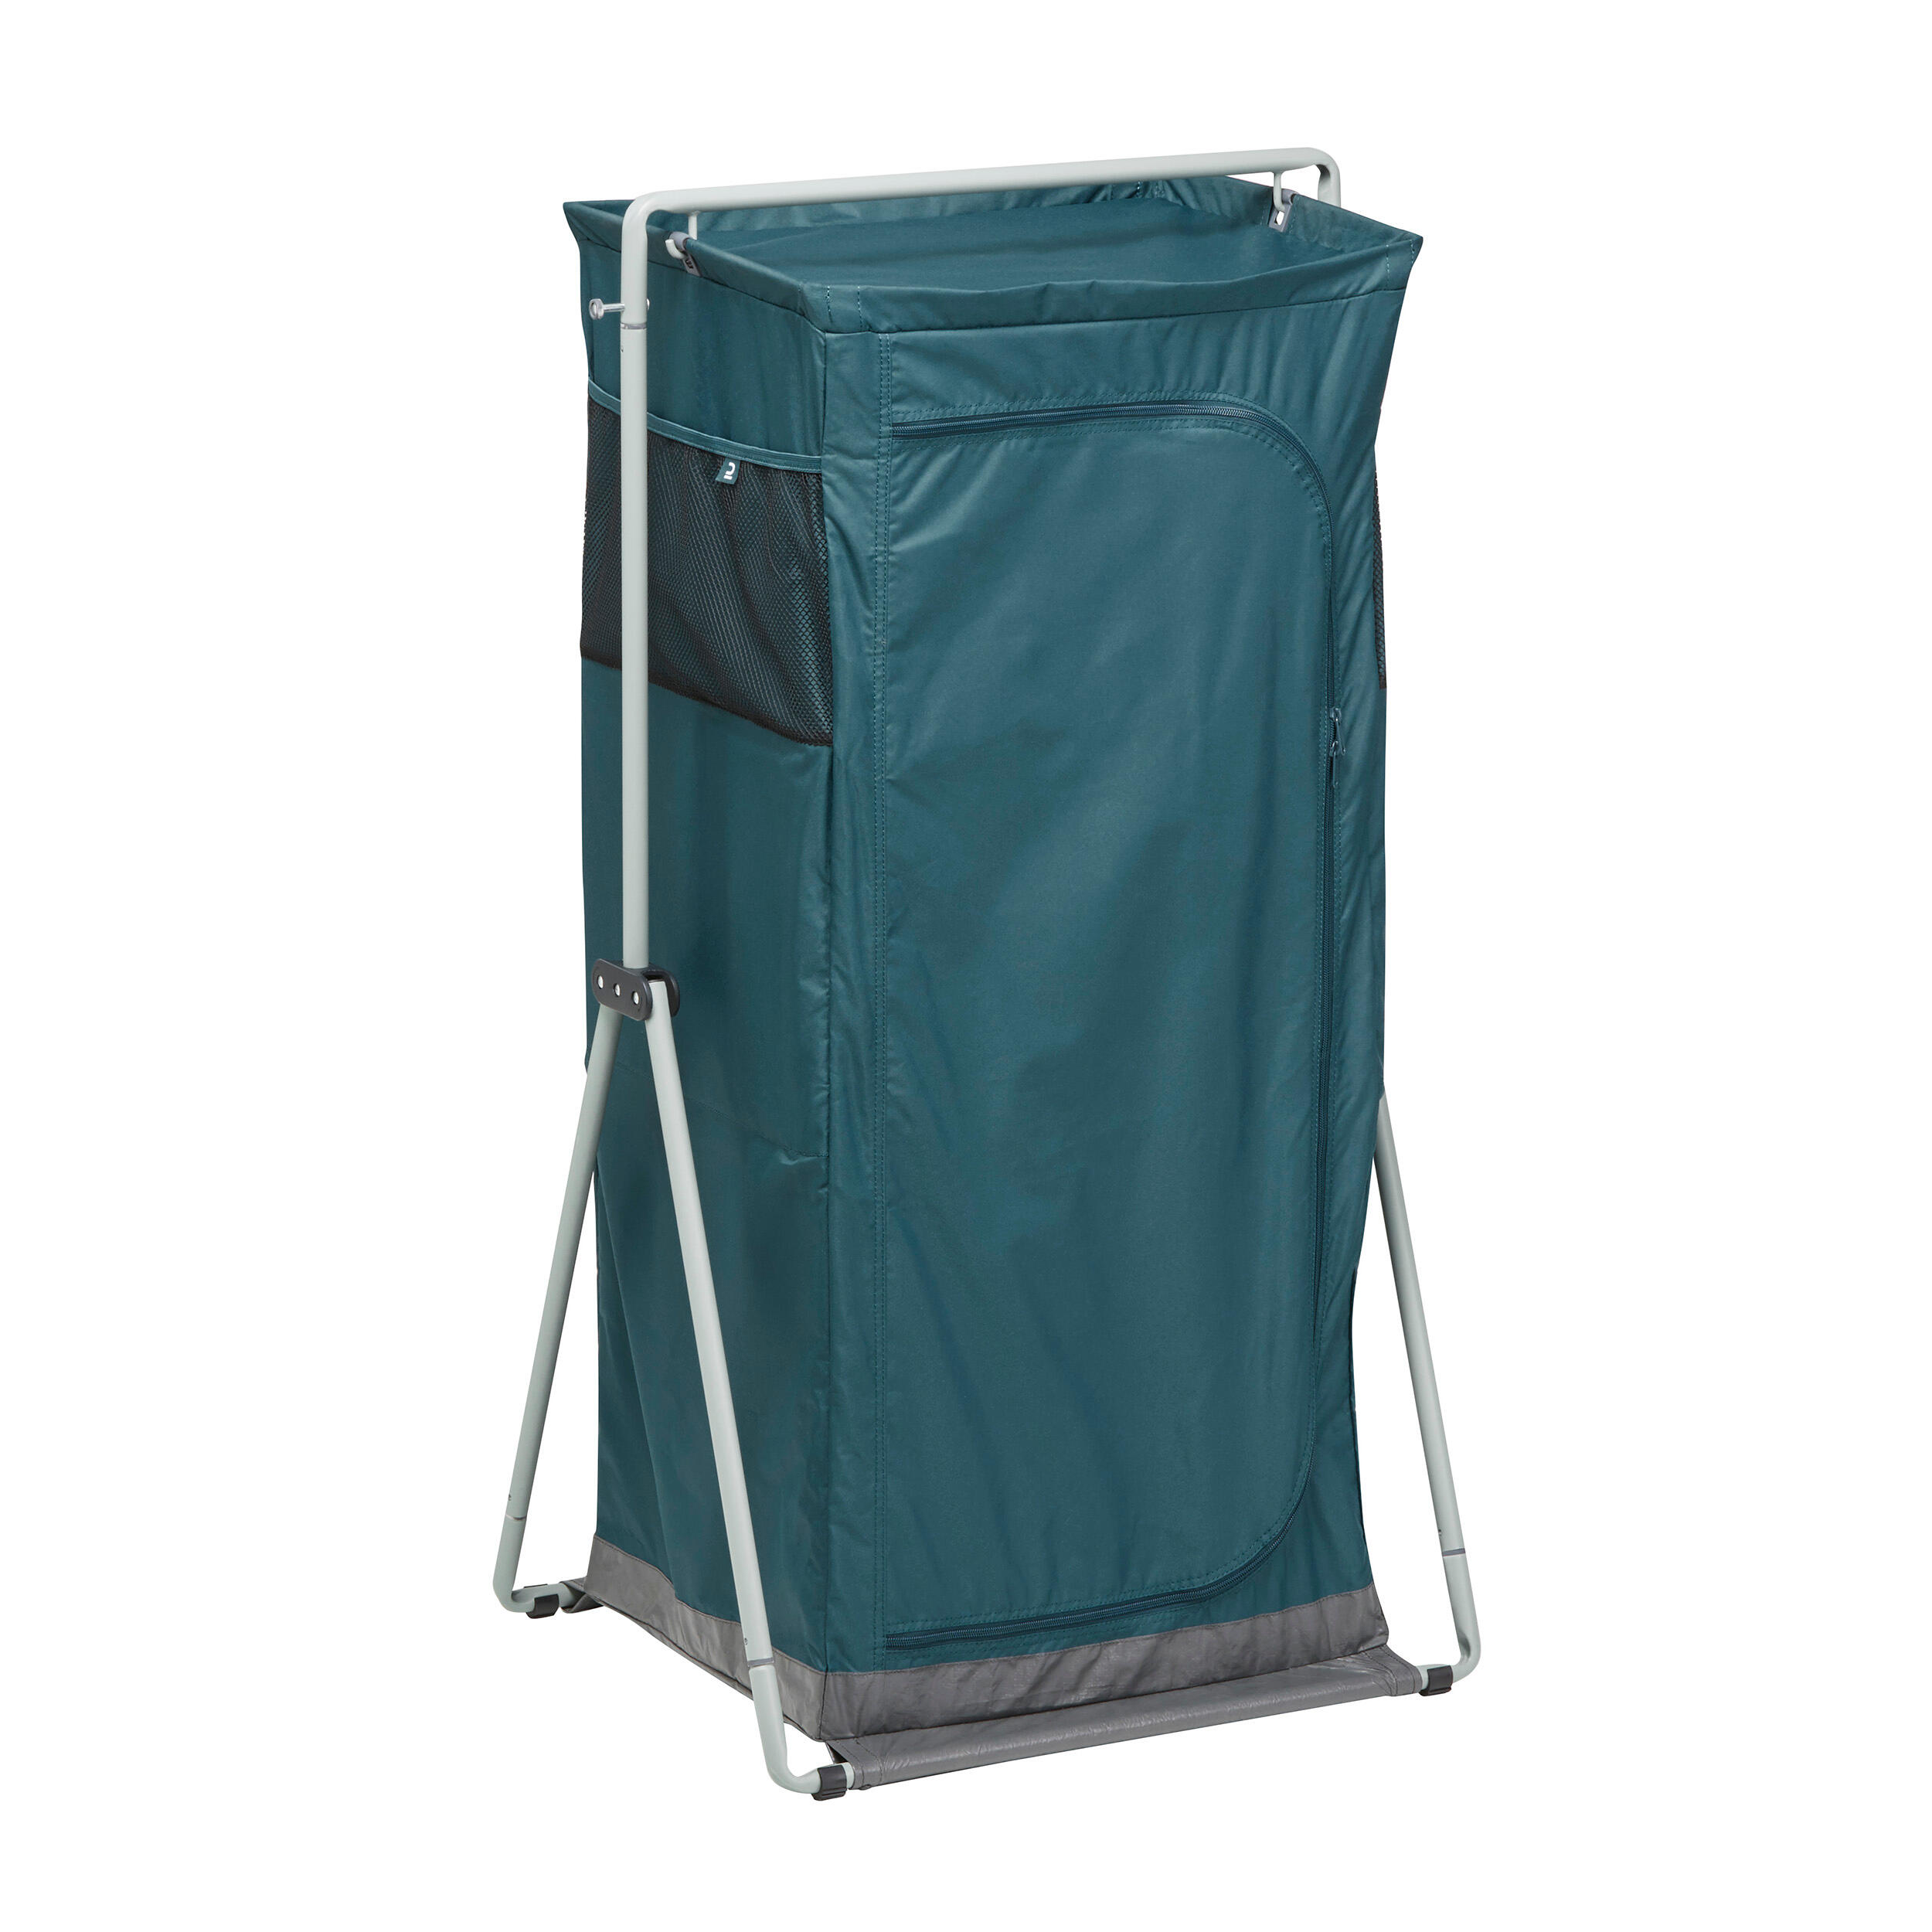 Folding and compact camping wardrobe - Basic 6/6